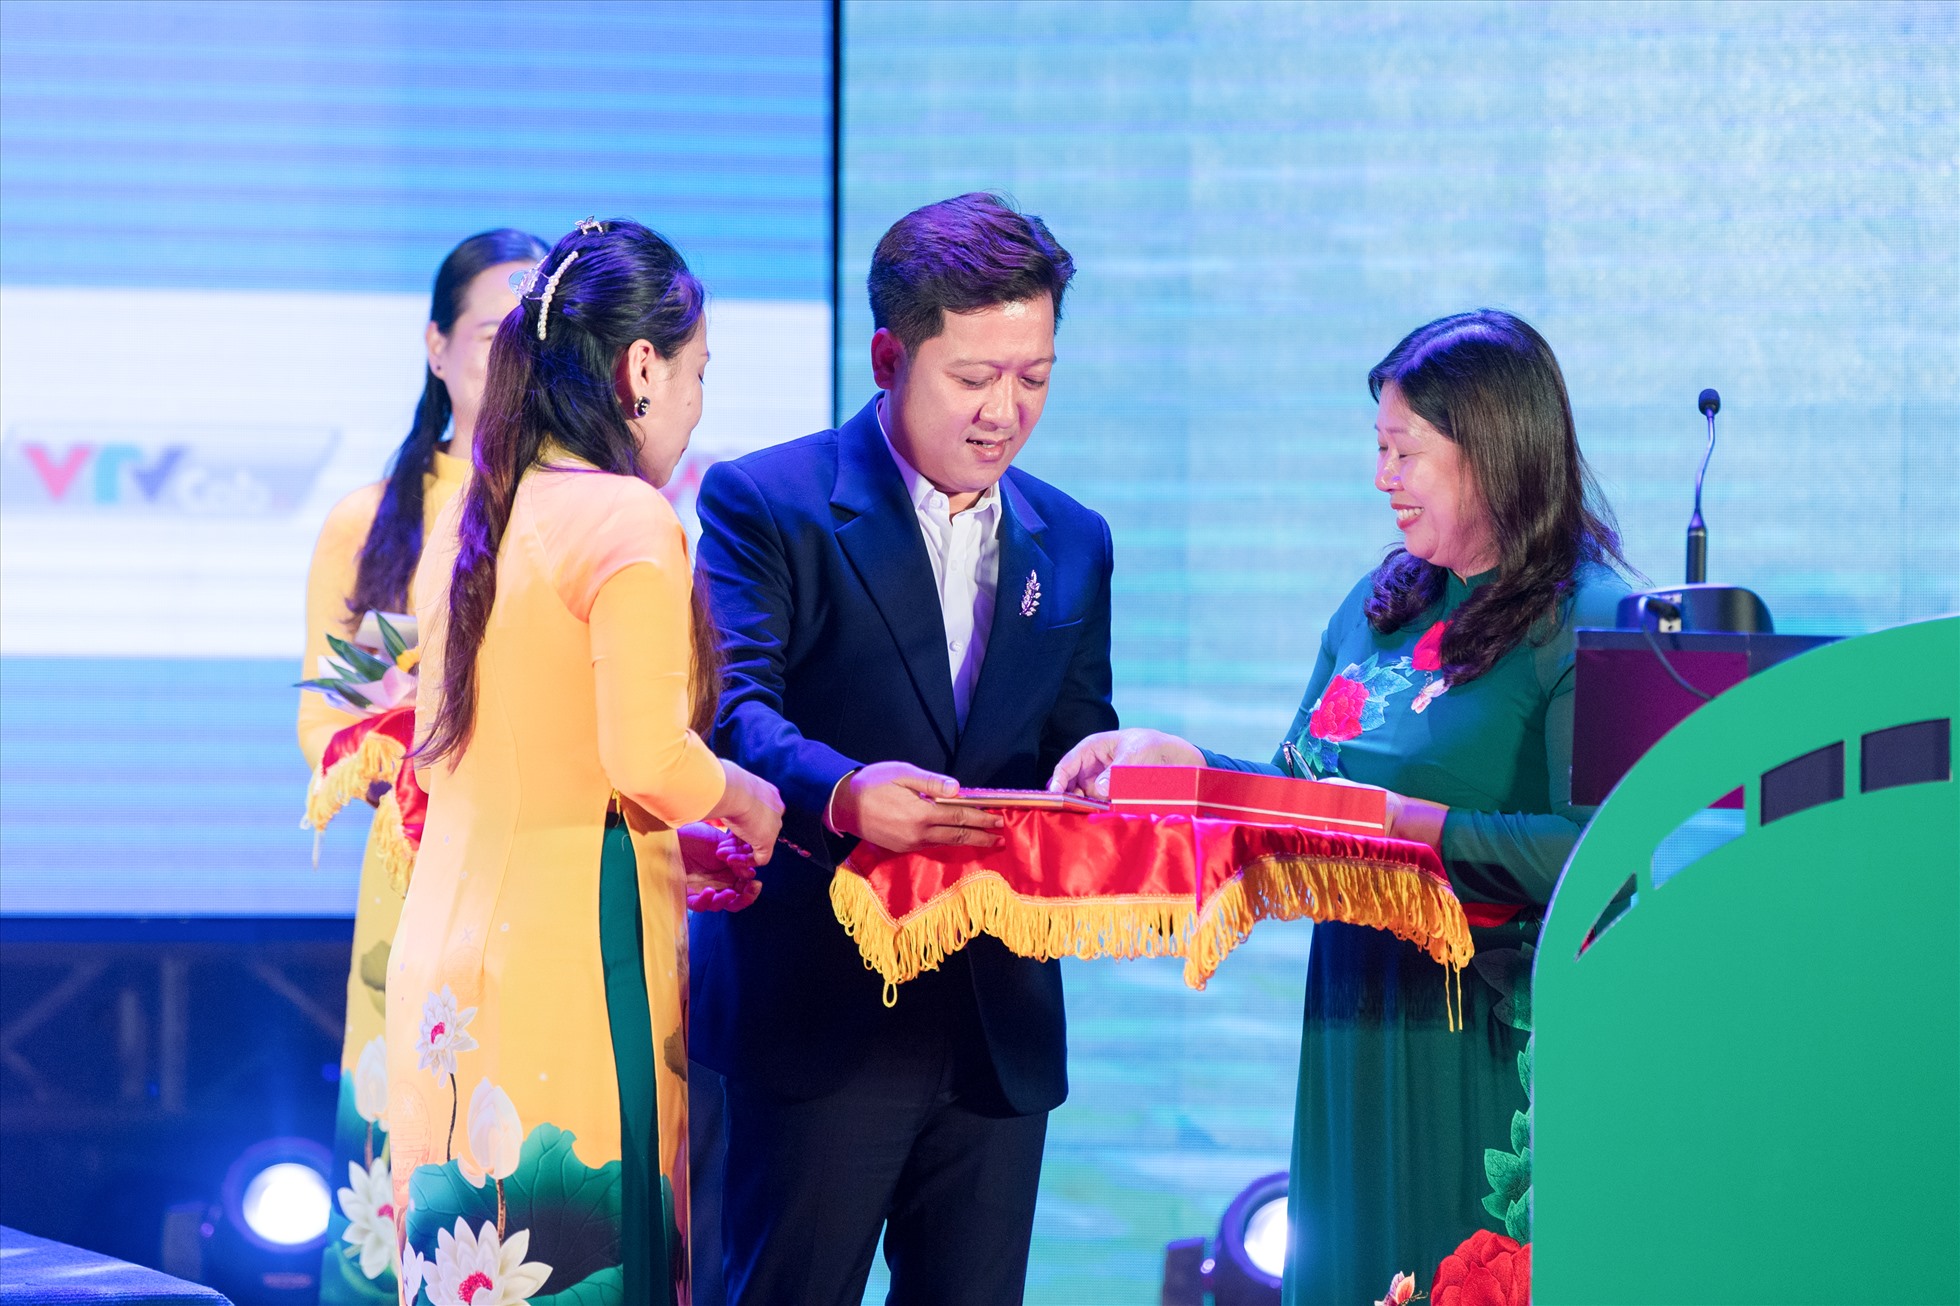 Tại sự kiện, bà Nguyễn Thị Phương Hoa – Thứ trưởng Bộ Tài Nguyên và Môi Trường và nghệ sĩ Trường Giang cùng lên công bố và trao giải đồng hành của Bộ Tài nguyên và Môi trường cho bộ phim xuất sắc về ý tưởng bảo vệ môi trường. Ảnh: NSCC.